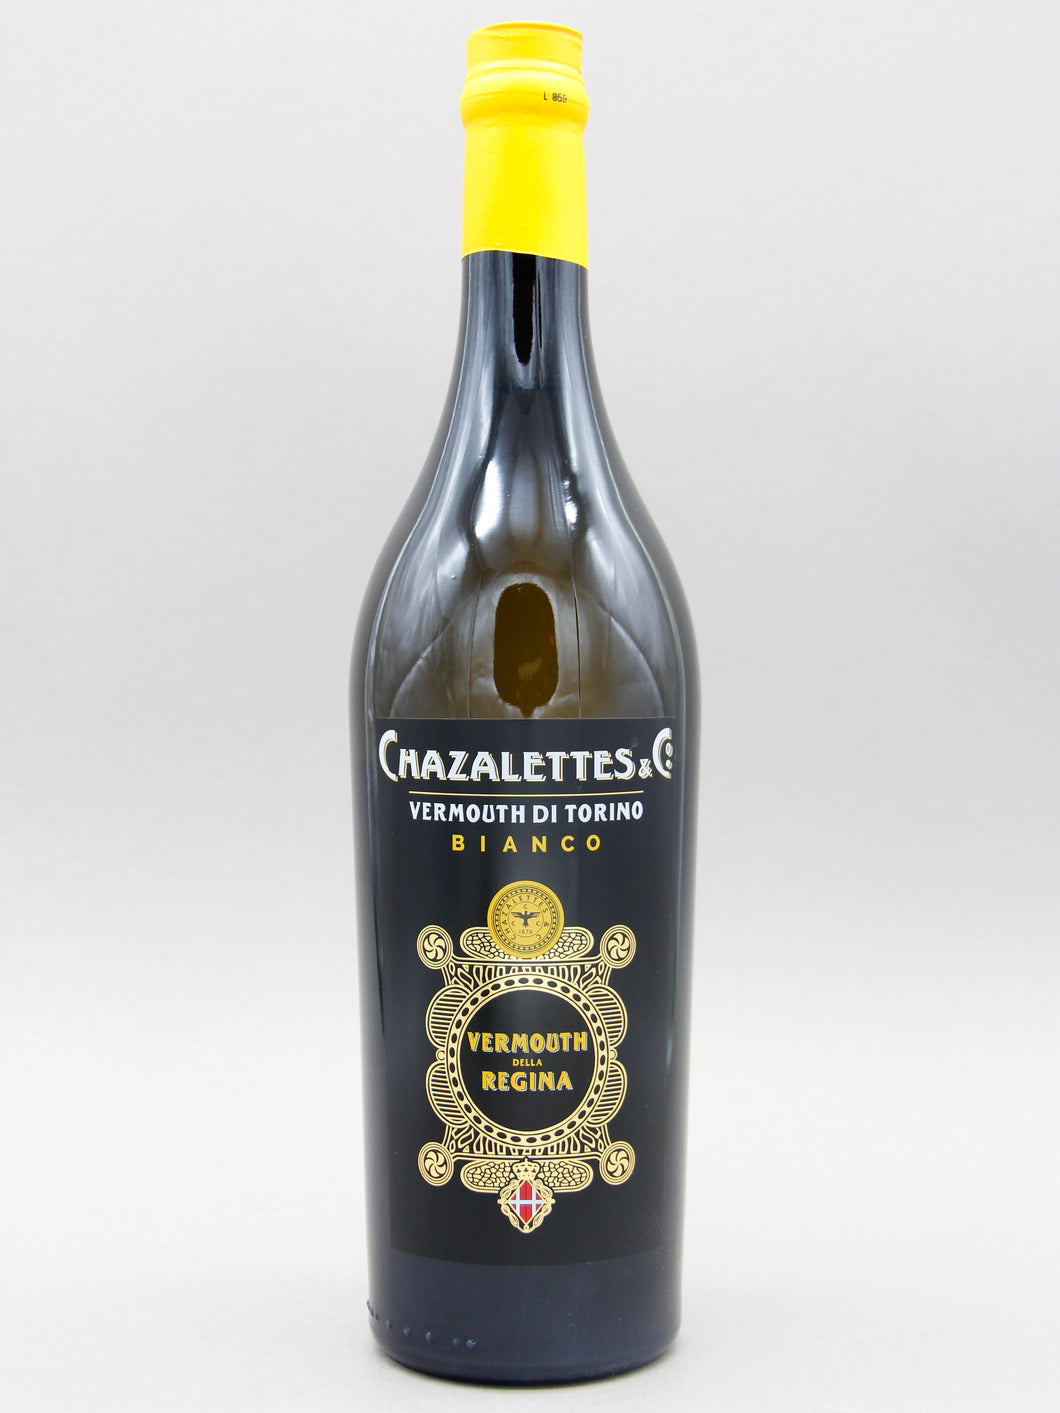 Chazalettes & Co. Vermouth Di Torino Bianco (16.5%, 75cl)